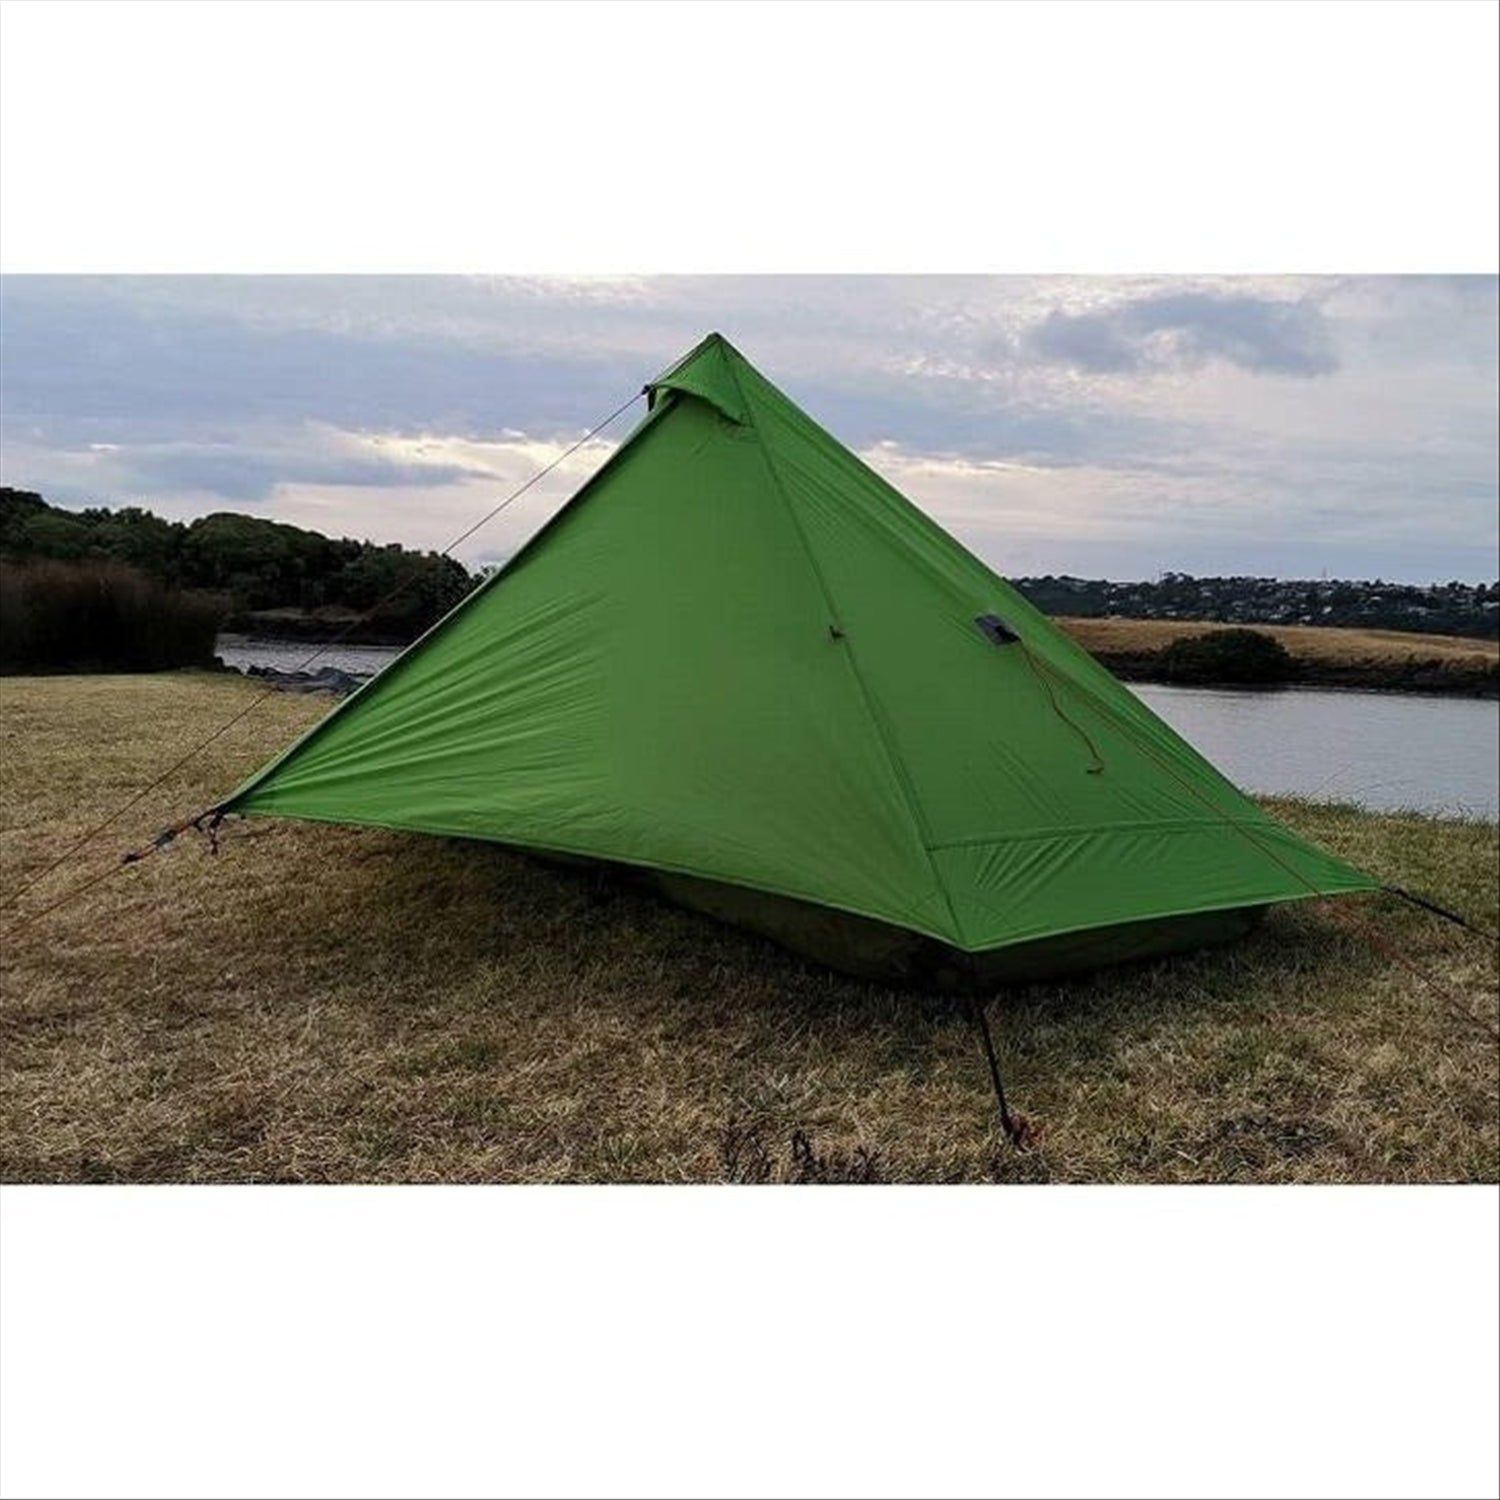 Orson Odyssey - Silnylon 1 person tent, single wall, 990g